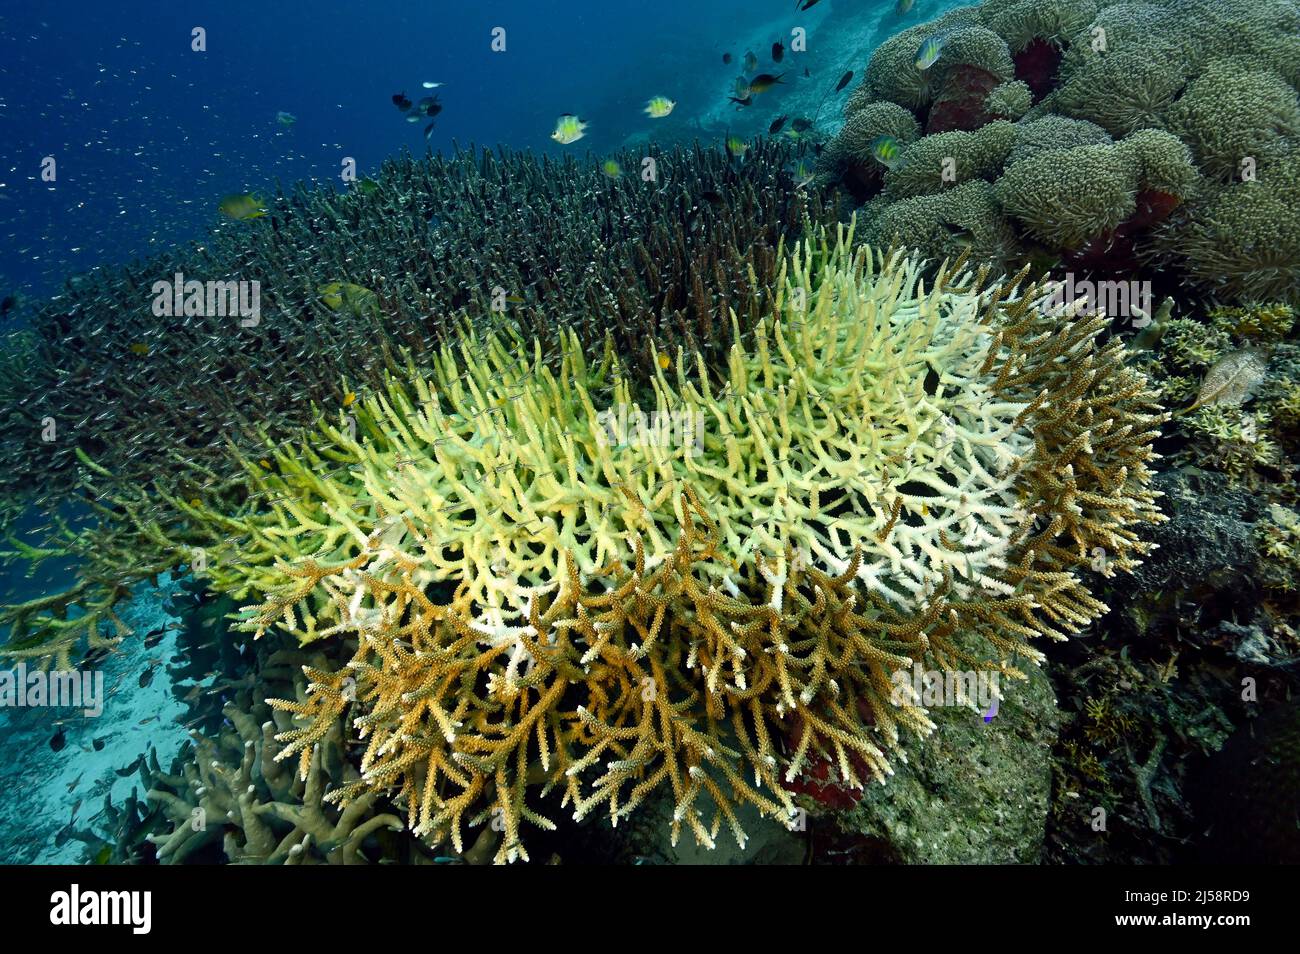 El coral de la mesa del cuerno del ciervo que blanquea está muriendo lentamente. La parte muerta ya ha sido cubierta por algas. Raja Ampat Indonesia. Foto de stock